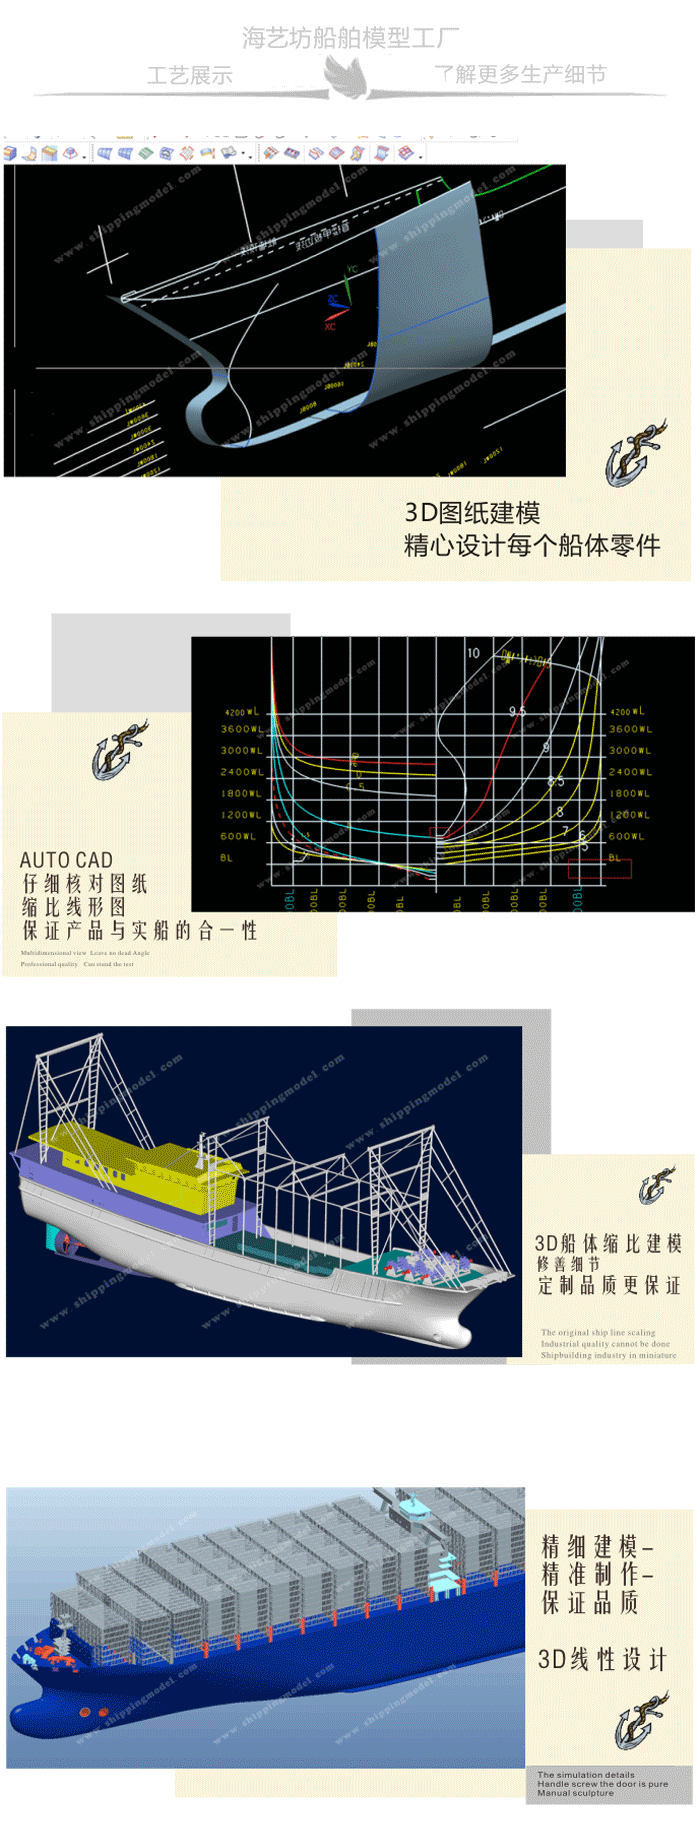 船定制船模_80cm 侧方式救生艇模型